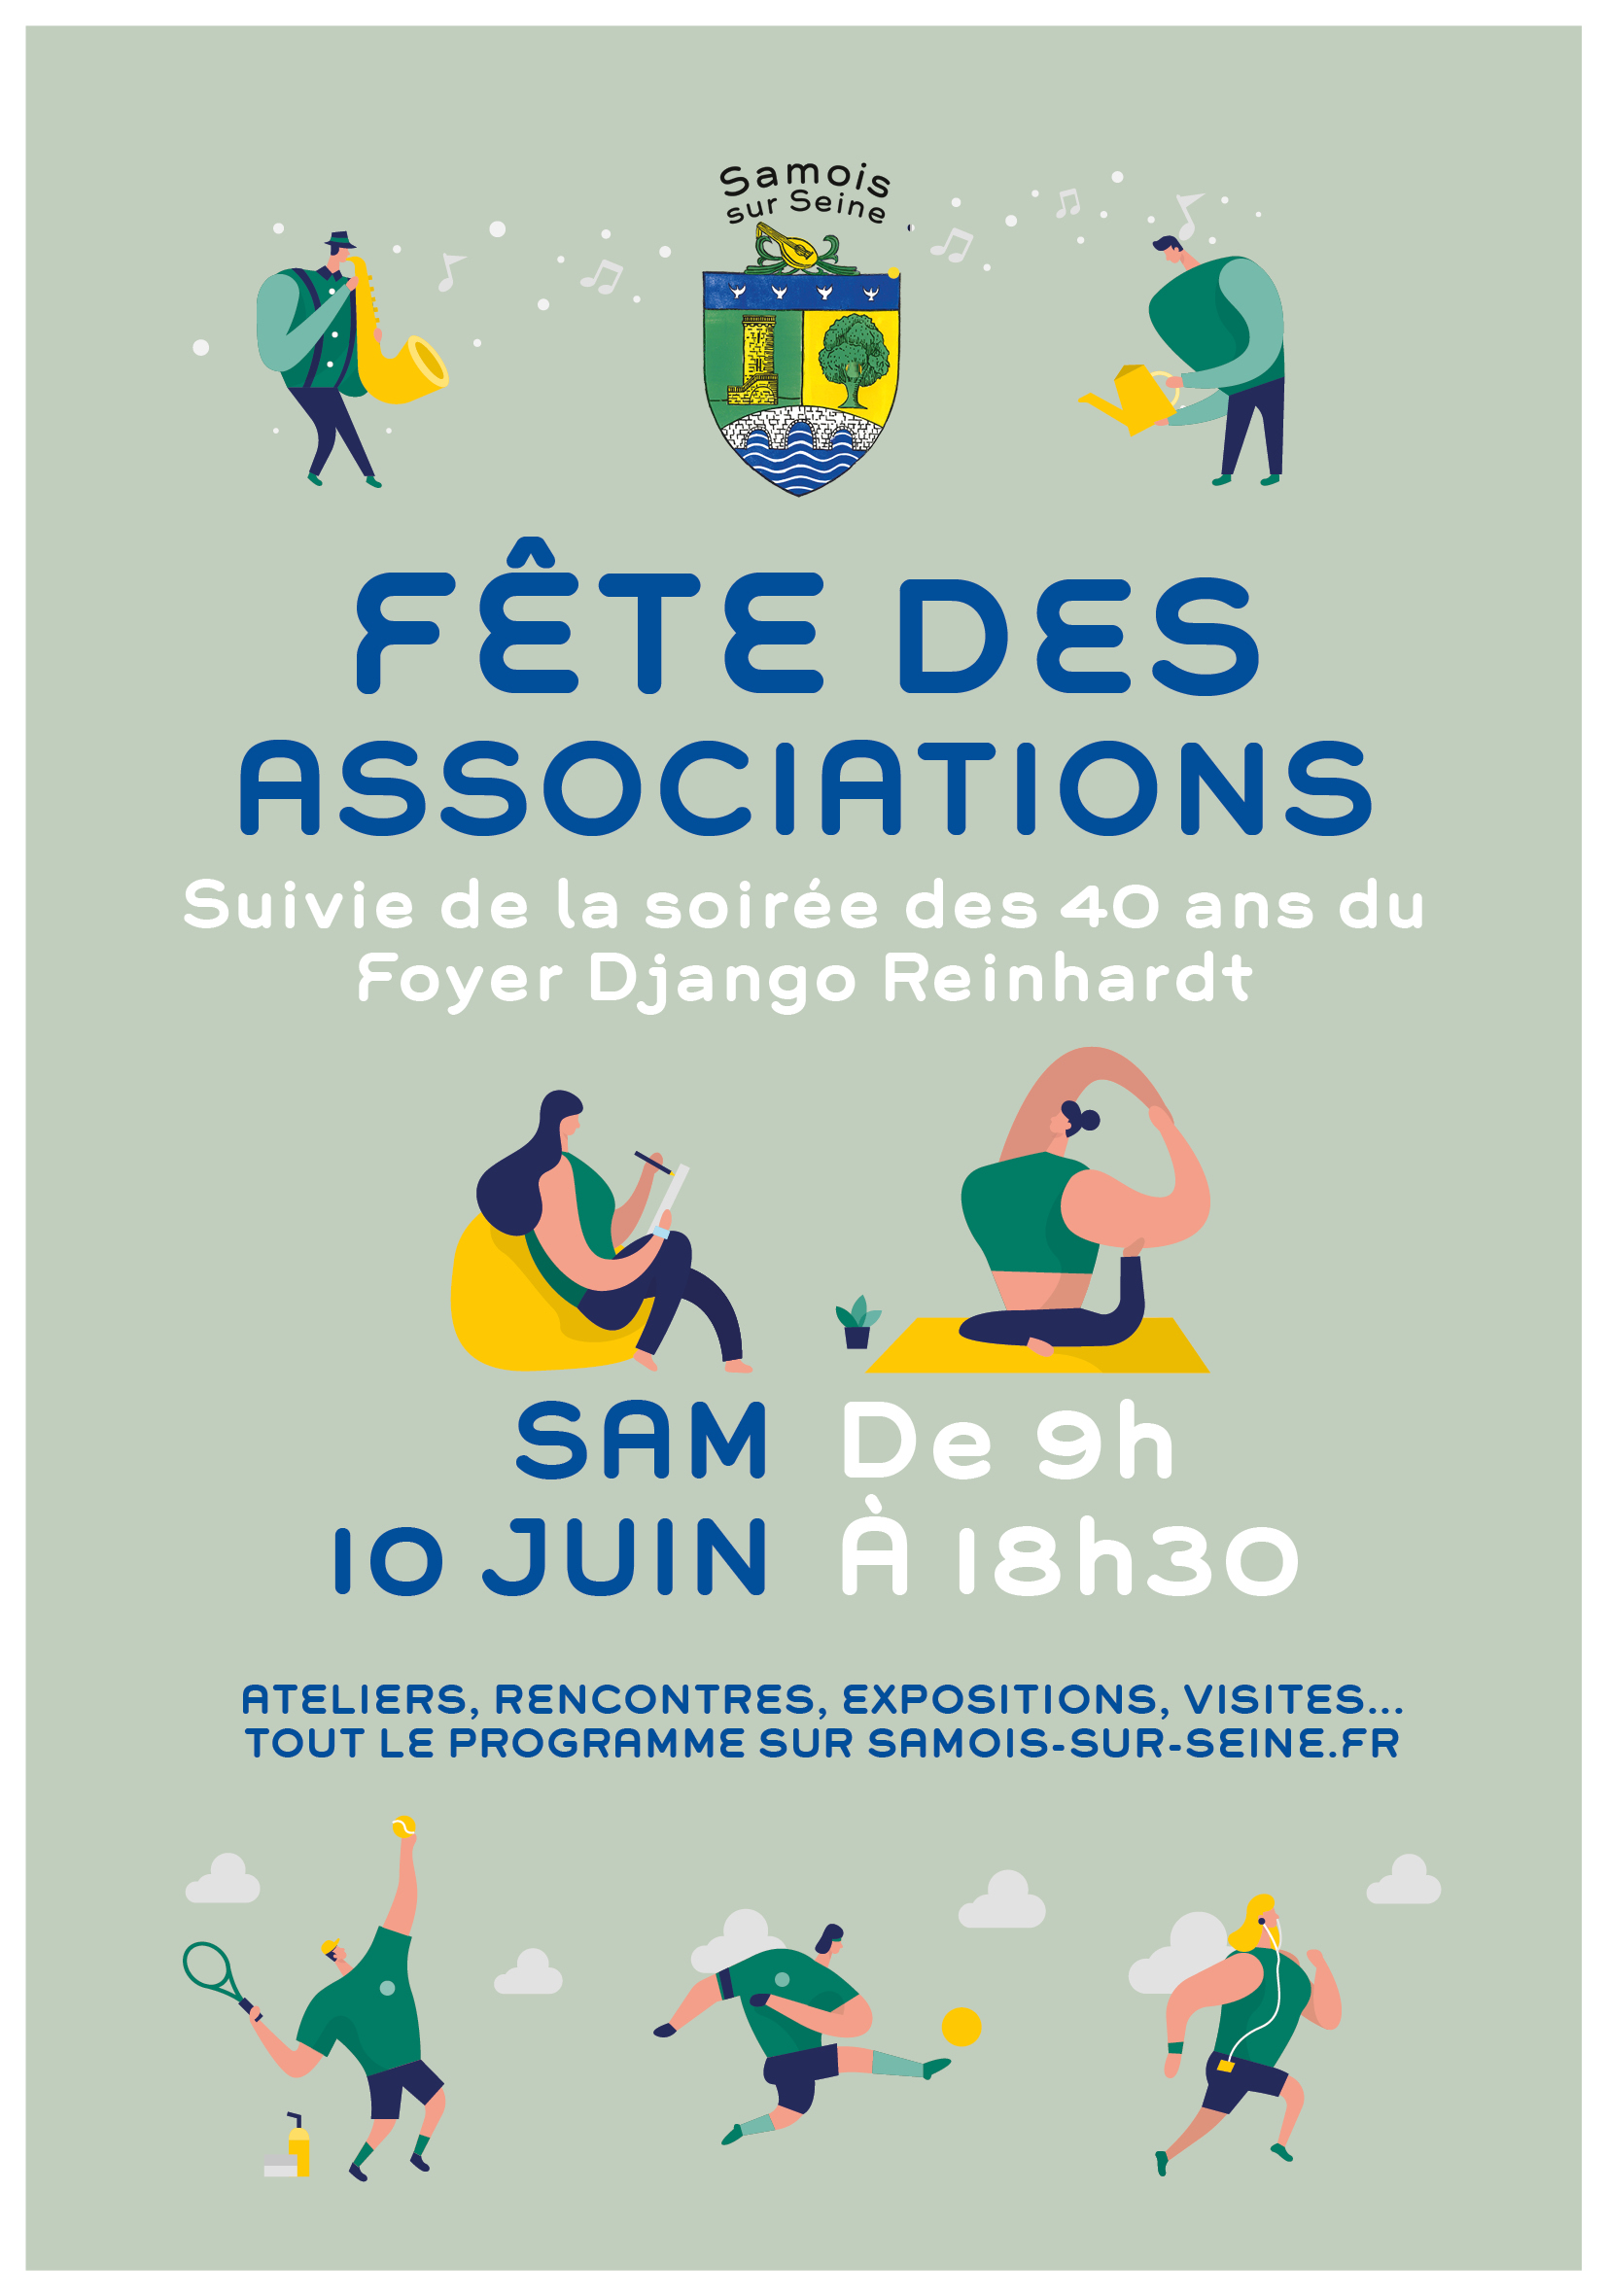 Fête des associations Samois-sur-Seine 2023